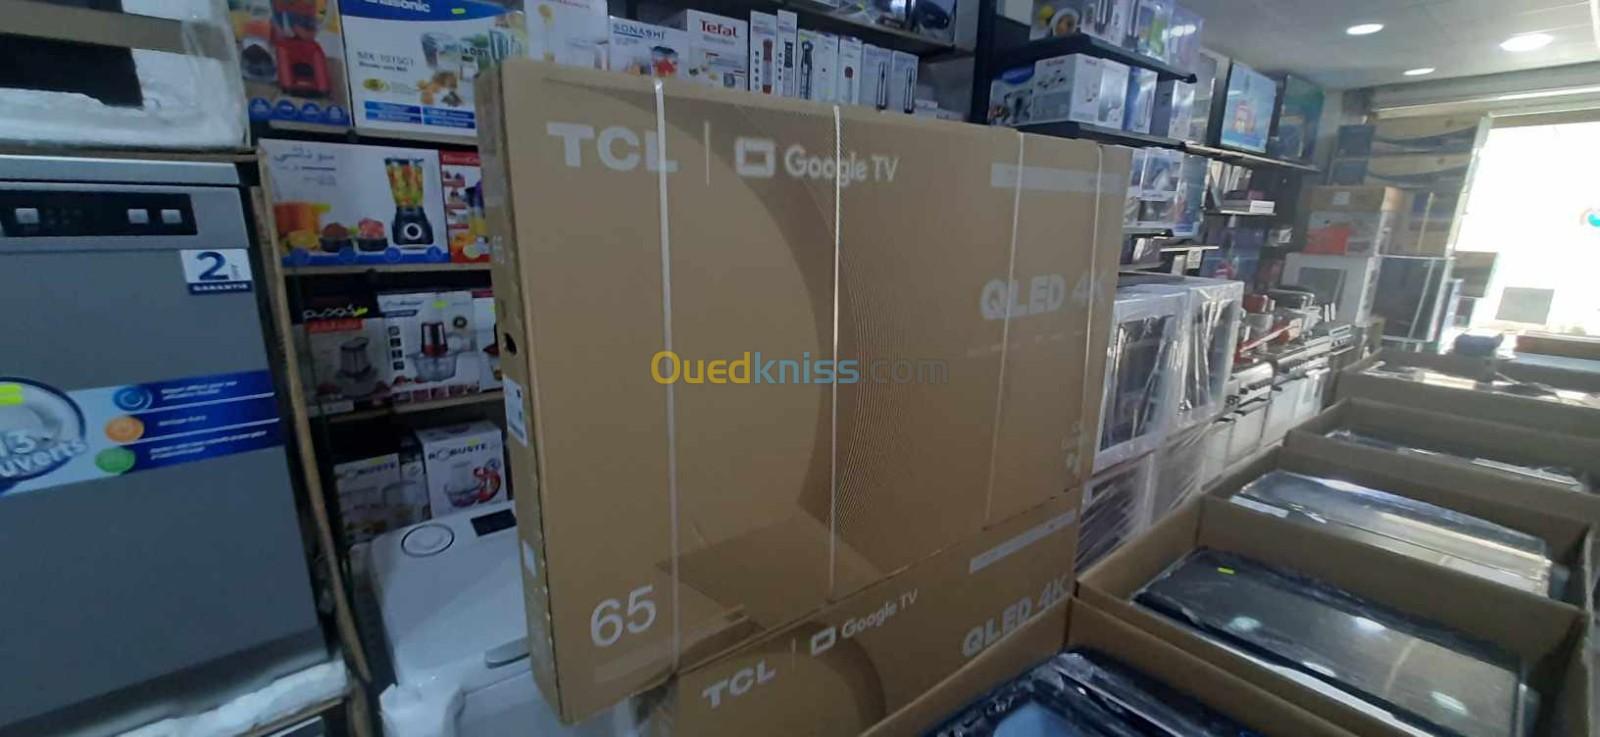 PROMOTION TV TCL 65 QLED C645 GOOGLE TV 4K UHD 120HZ HDR10+ 